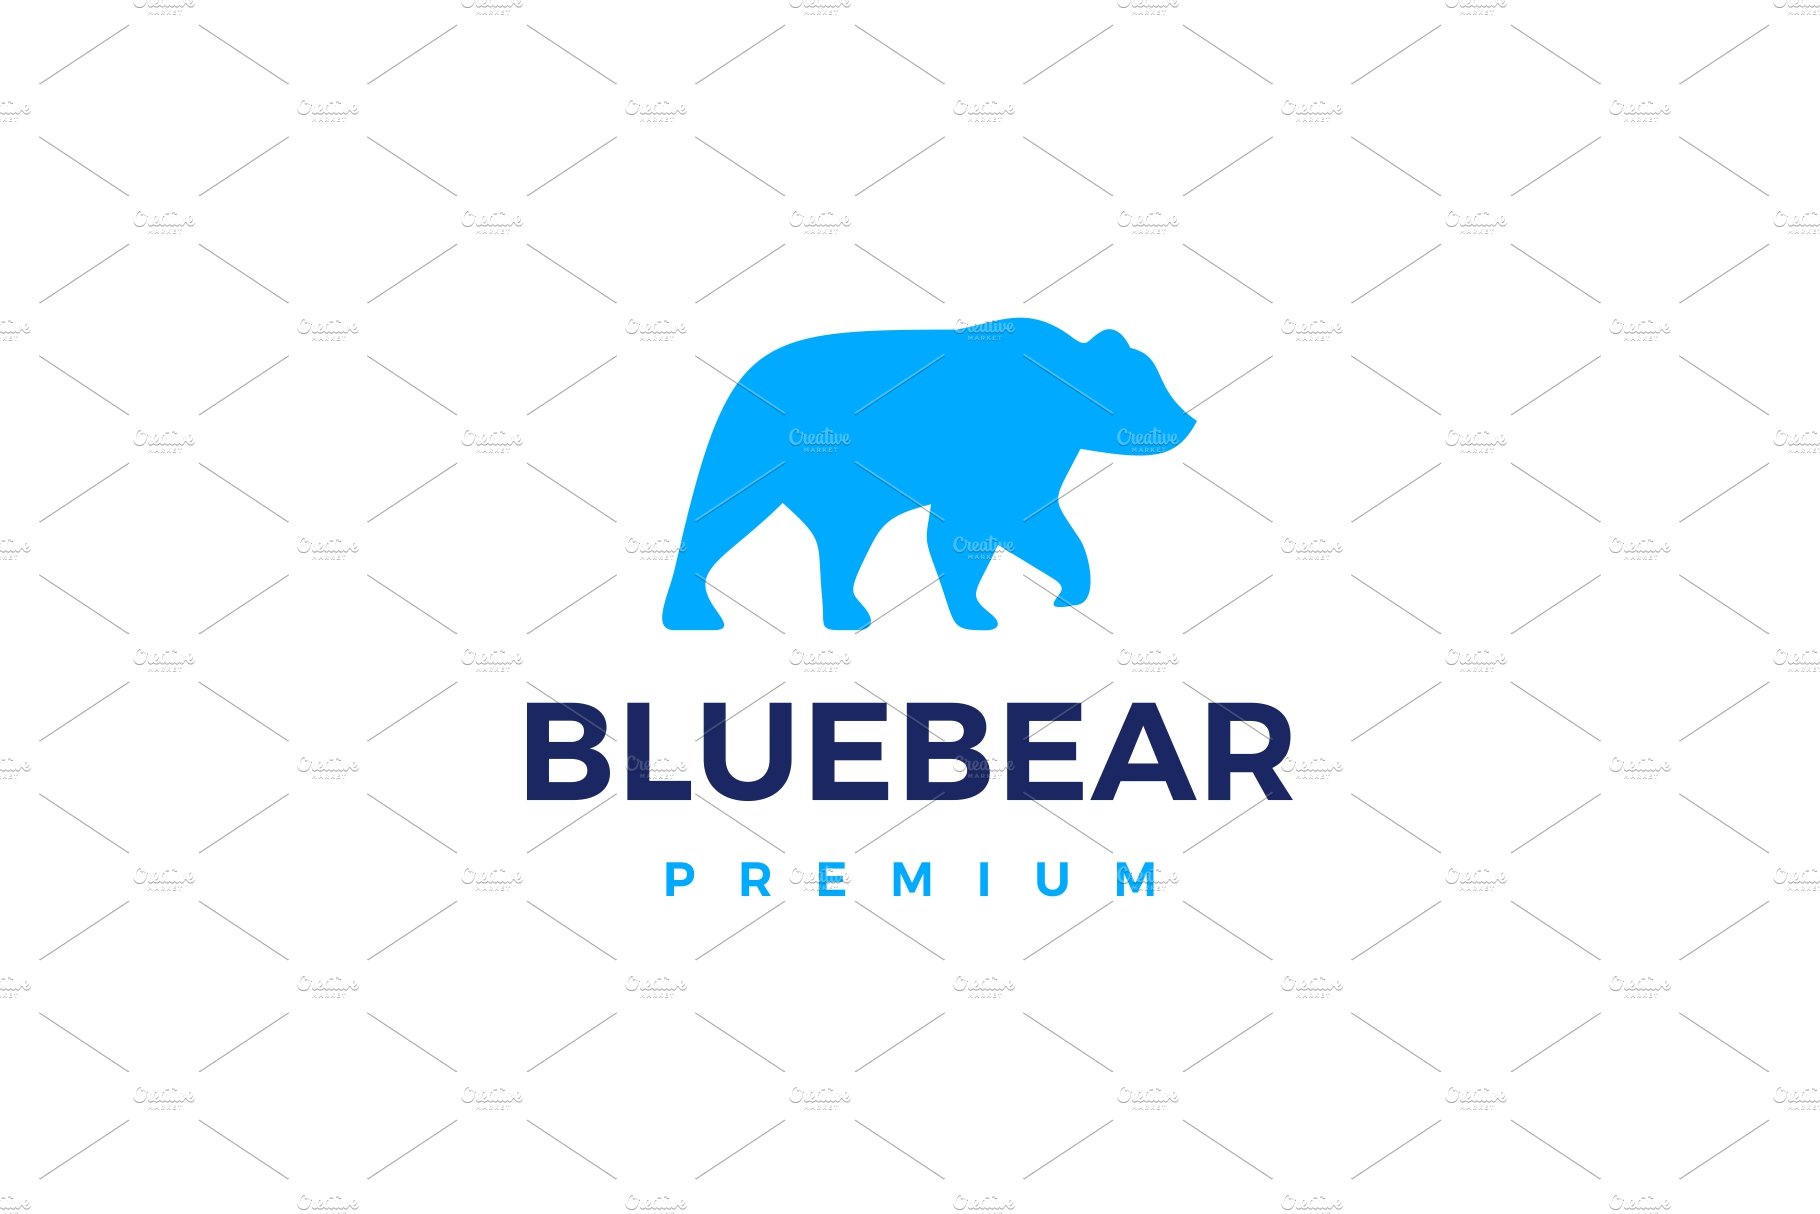 blue bear logo vector icon cover image.